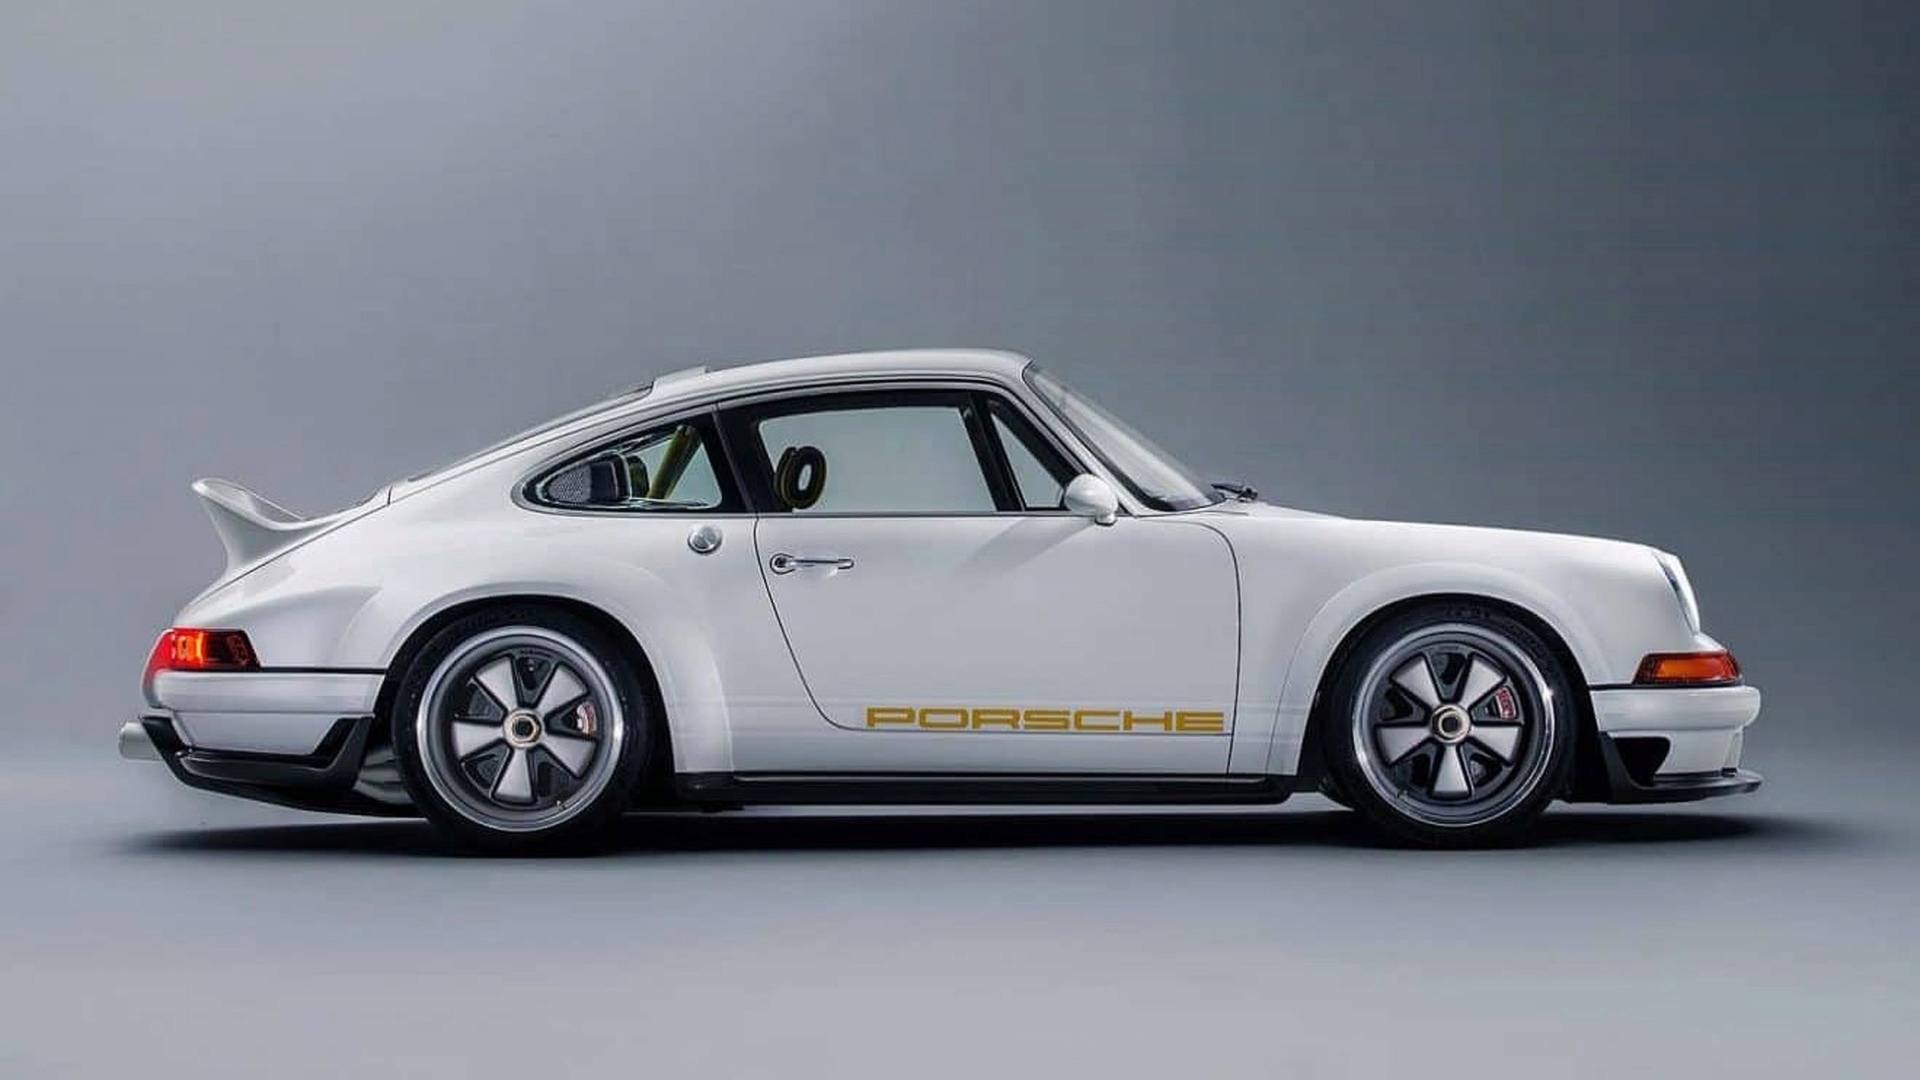 SINGER Porsche Dynamic (5)